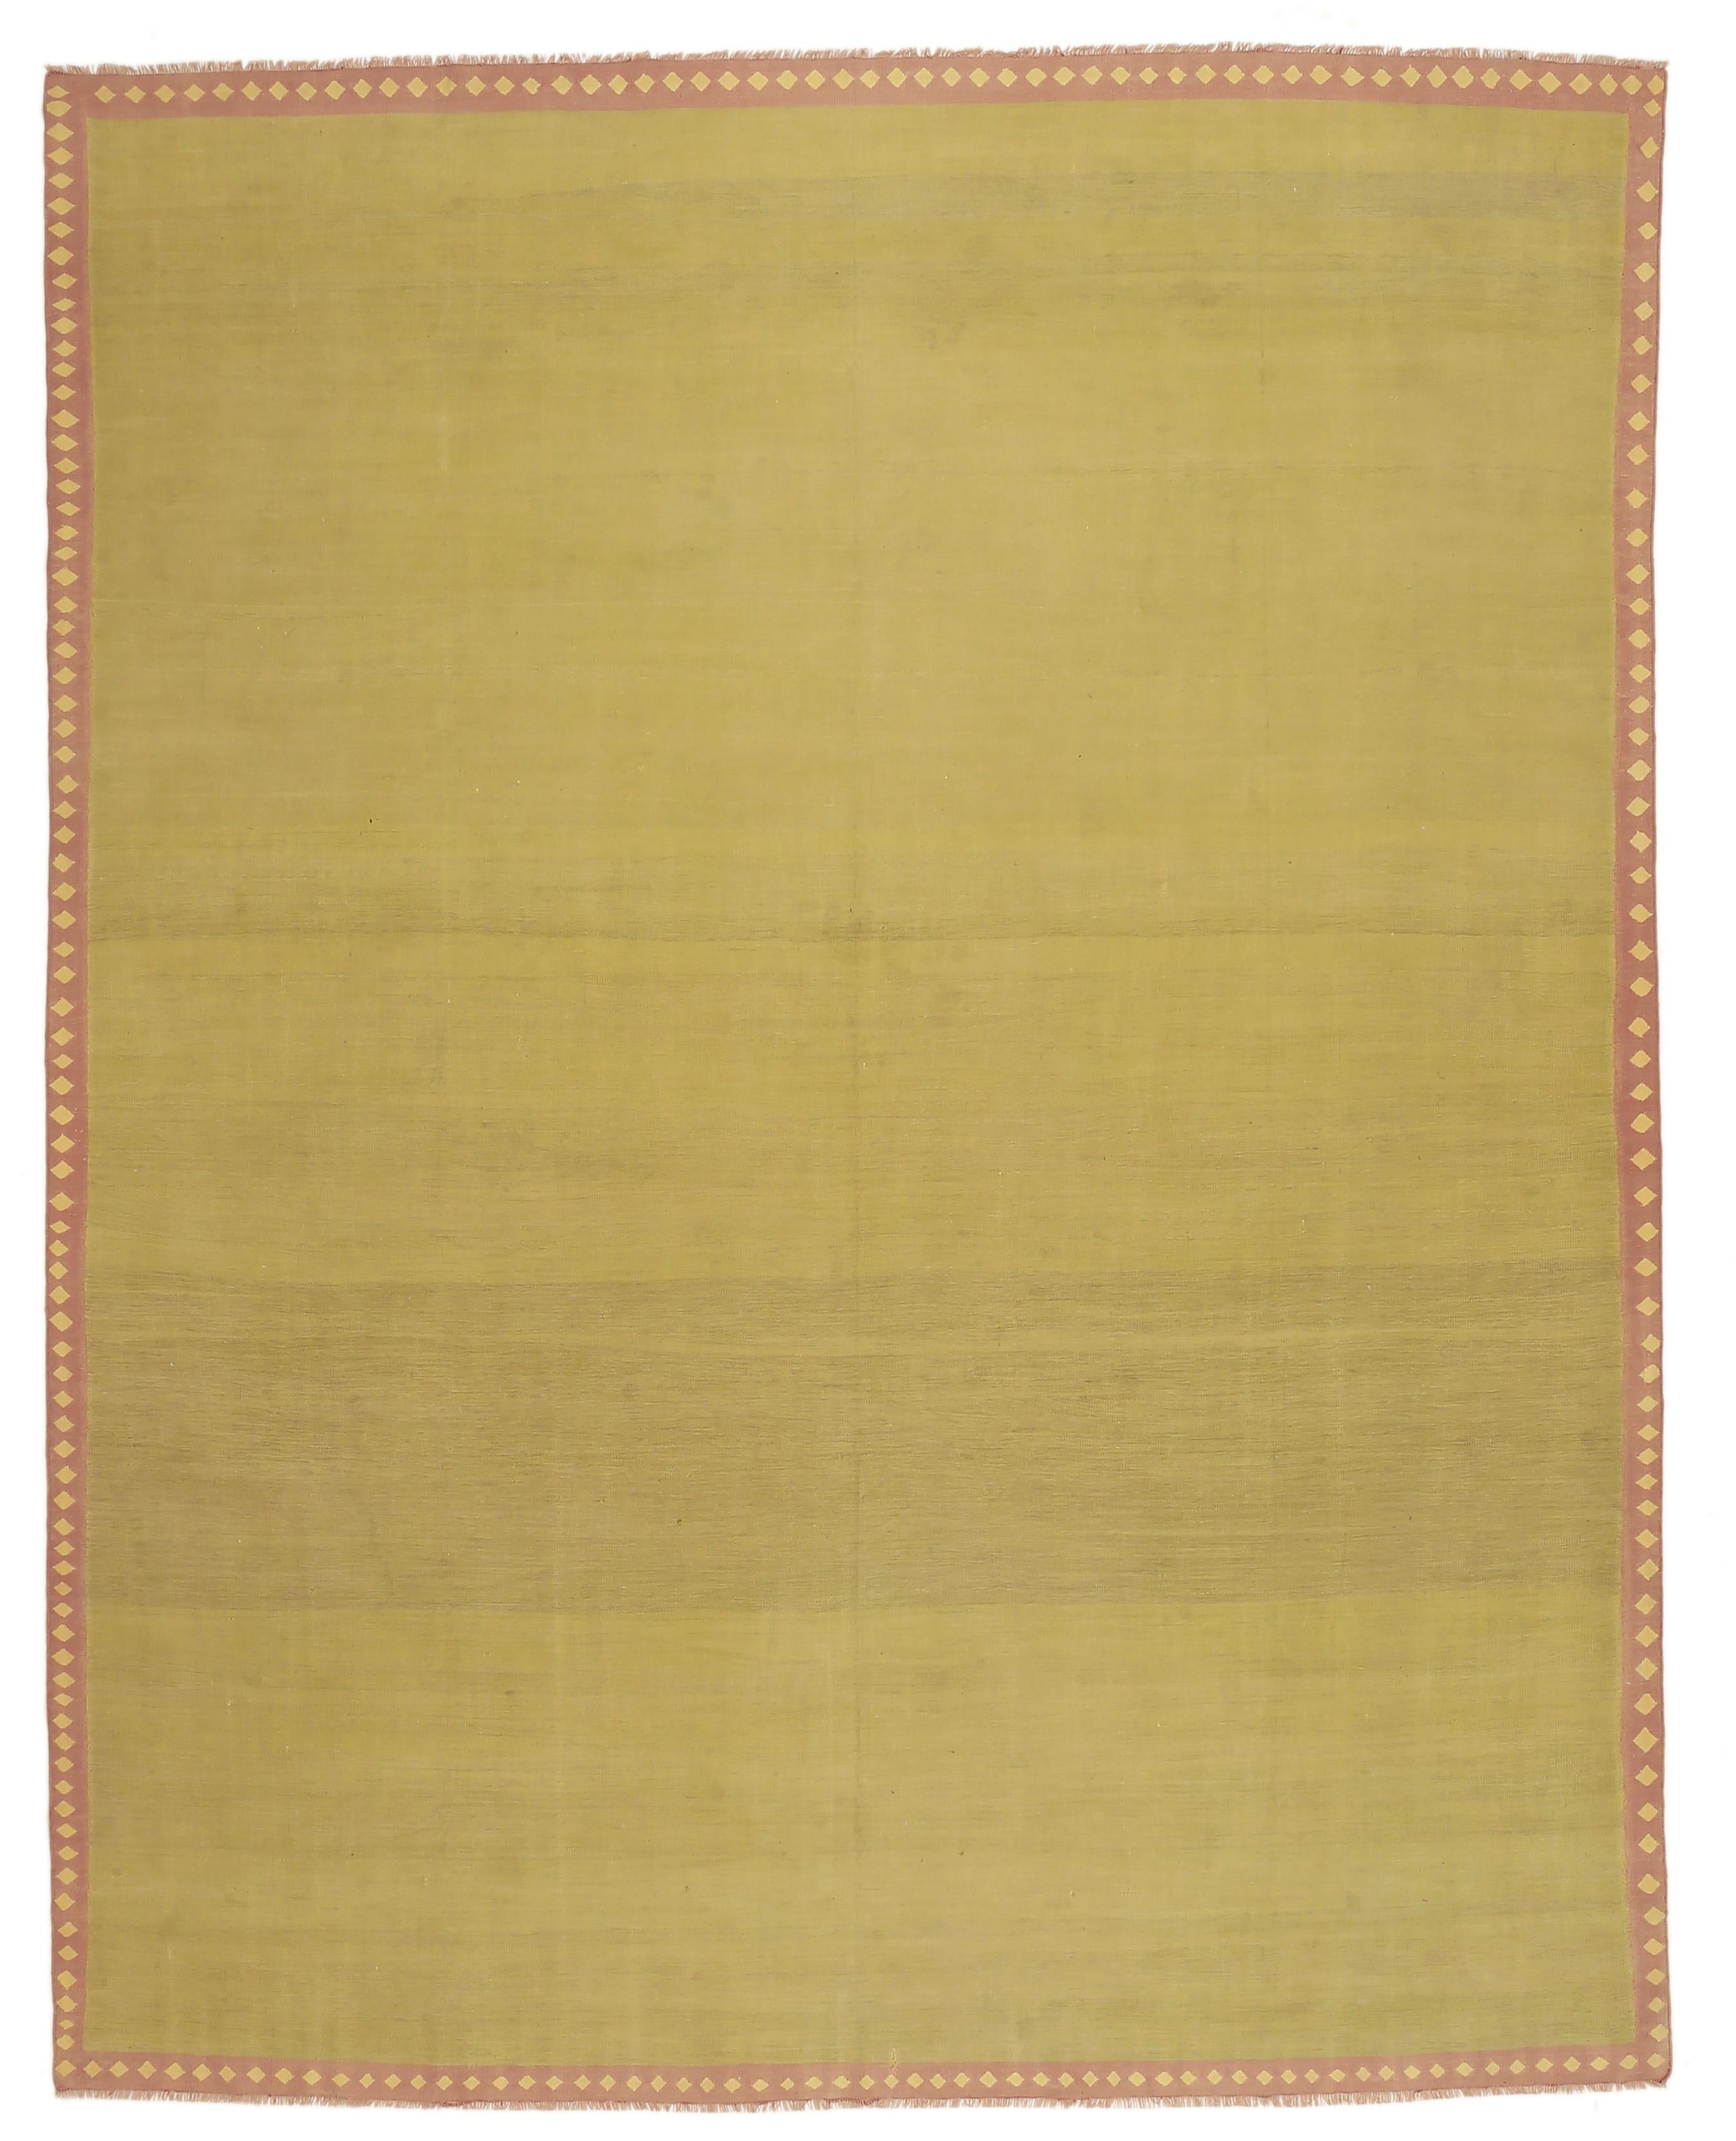 Le tissage de tapis de coton à tissage plat, appelés dhurries, est mentionné dans les chroniques mogholes du XVe siècle. Probablement l'une des premières formes de revêtement de sol, les dhurries ont été tissées dans différents formats selon leur